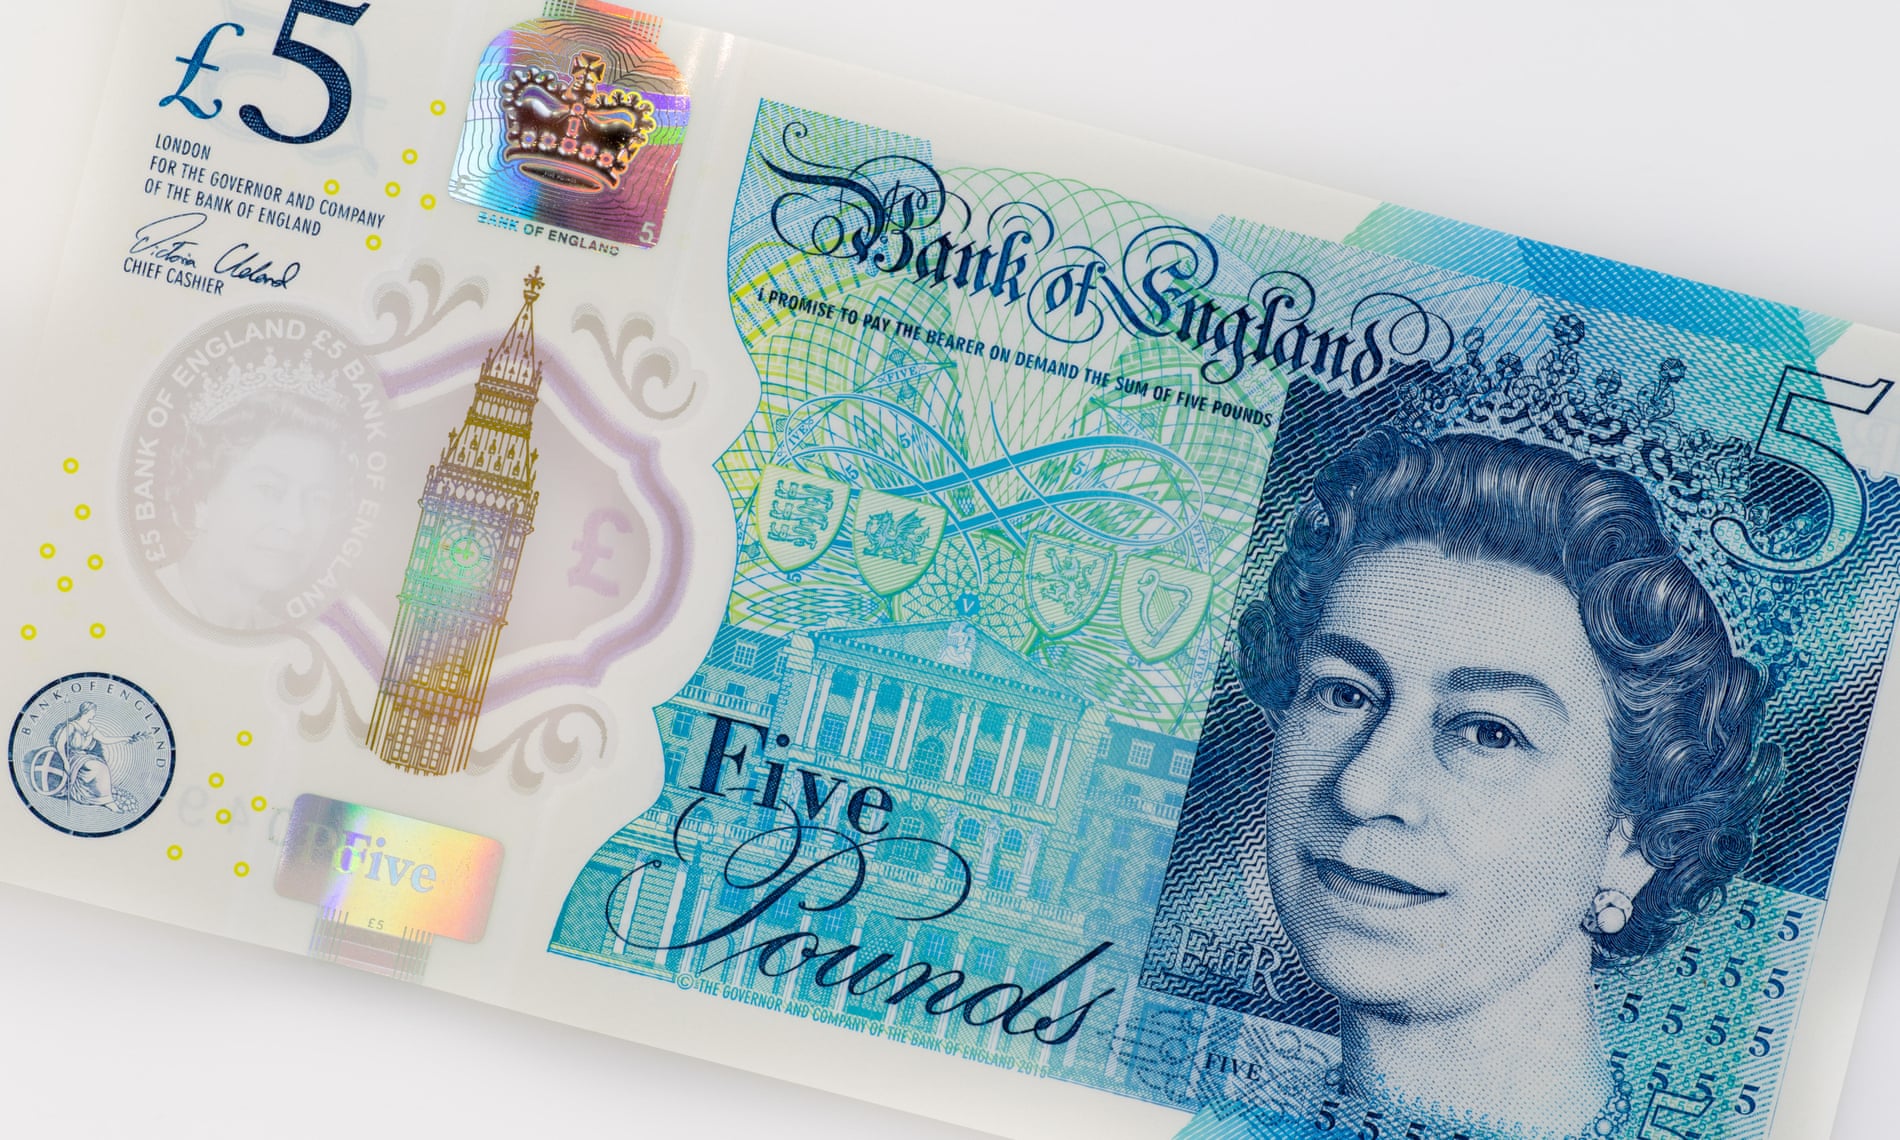 Primer plano de un billete de cinco libras esterlinas del Banco de Inglaterra. En el billete se muestra un retrato de la Reina Isabel II a la derecha, con detalles en tonos azules y verdes. A la izquierda, se ve una ilustración del Big Ben y varios elementos de seguridad, como un holograma y microimpresiones. En la parte superior izquierda se encuentra el símbolo de la libra esterlina (£) y el valor del billete (5). En el centro, el texto "Bank of England" y "Five Pounds".